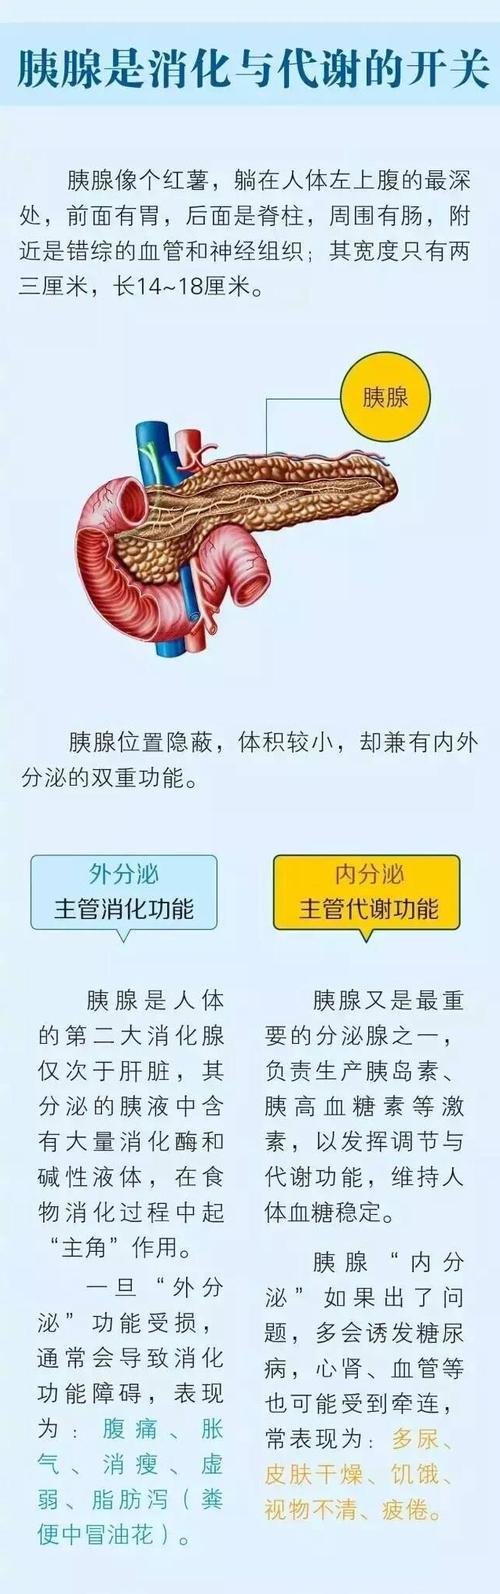 胰腺的功能和作用的相关图片